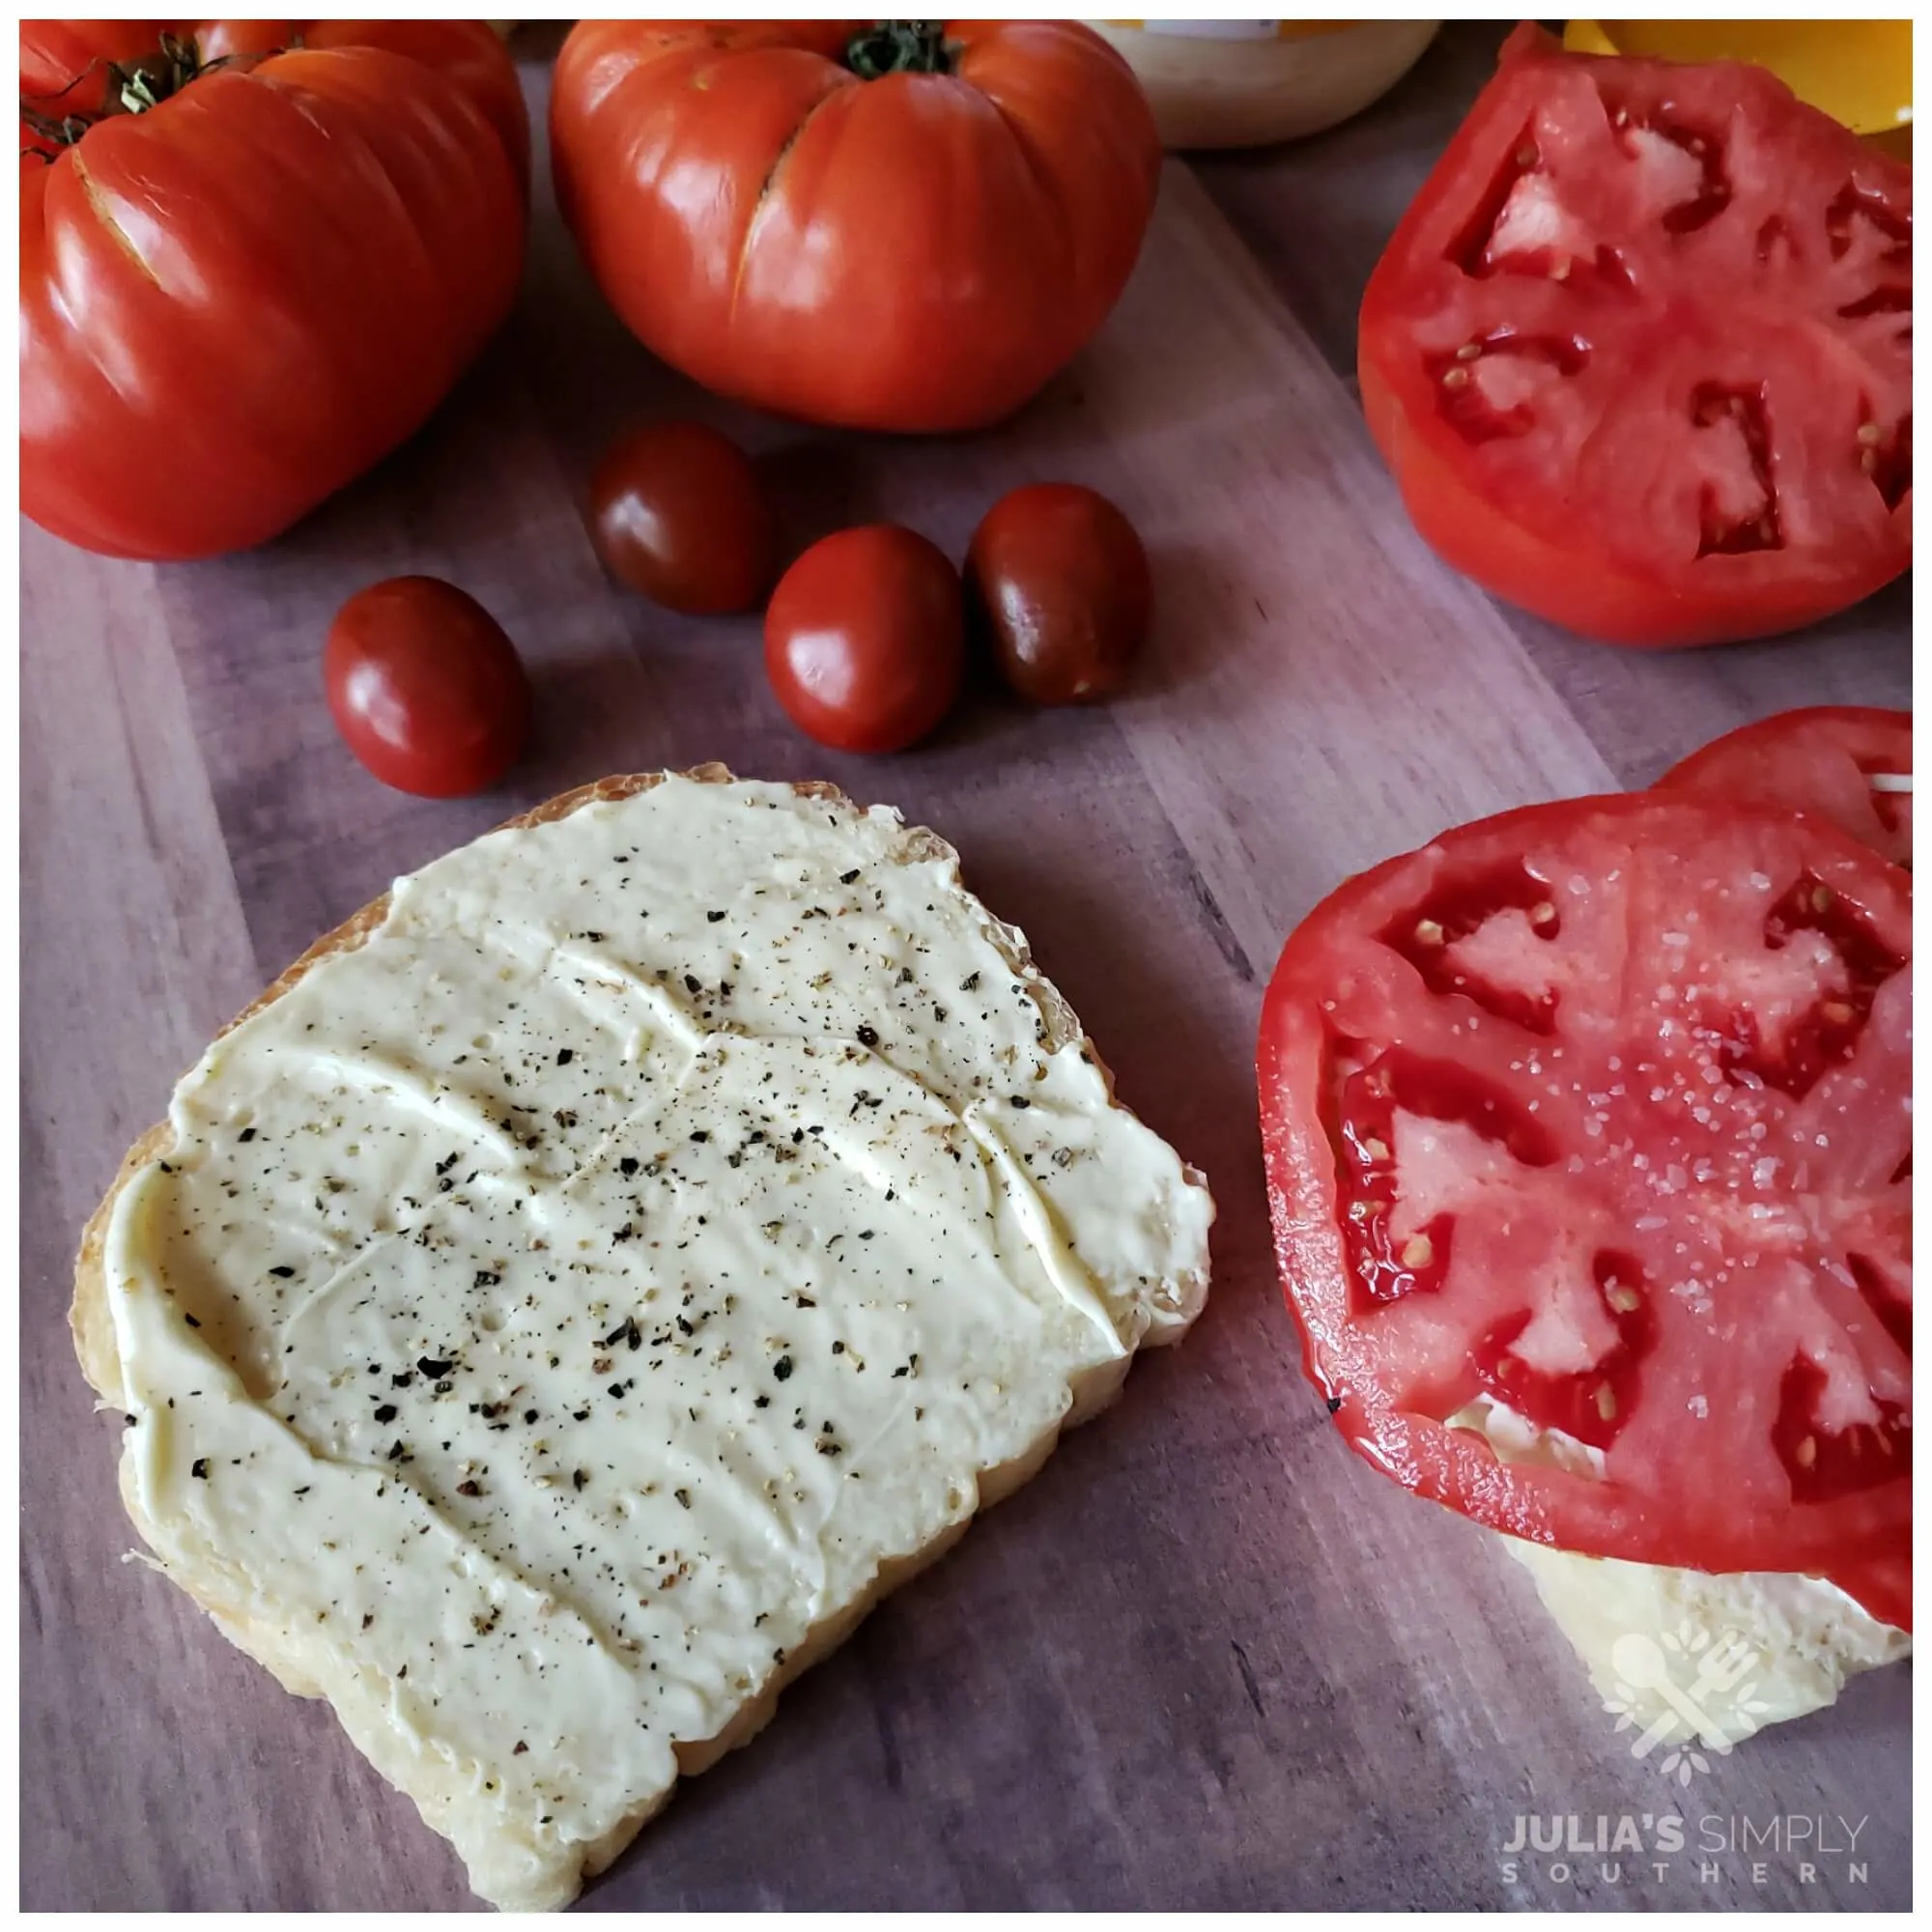 Perfect tomato sandwiches